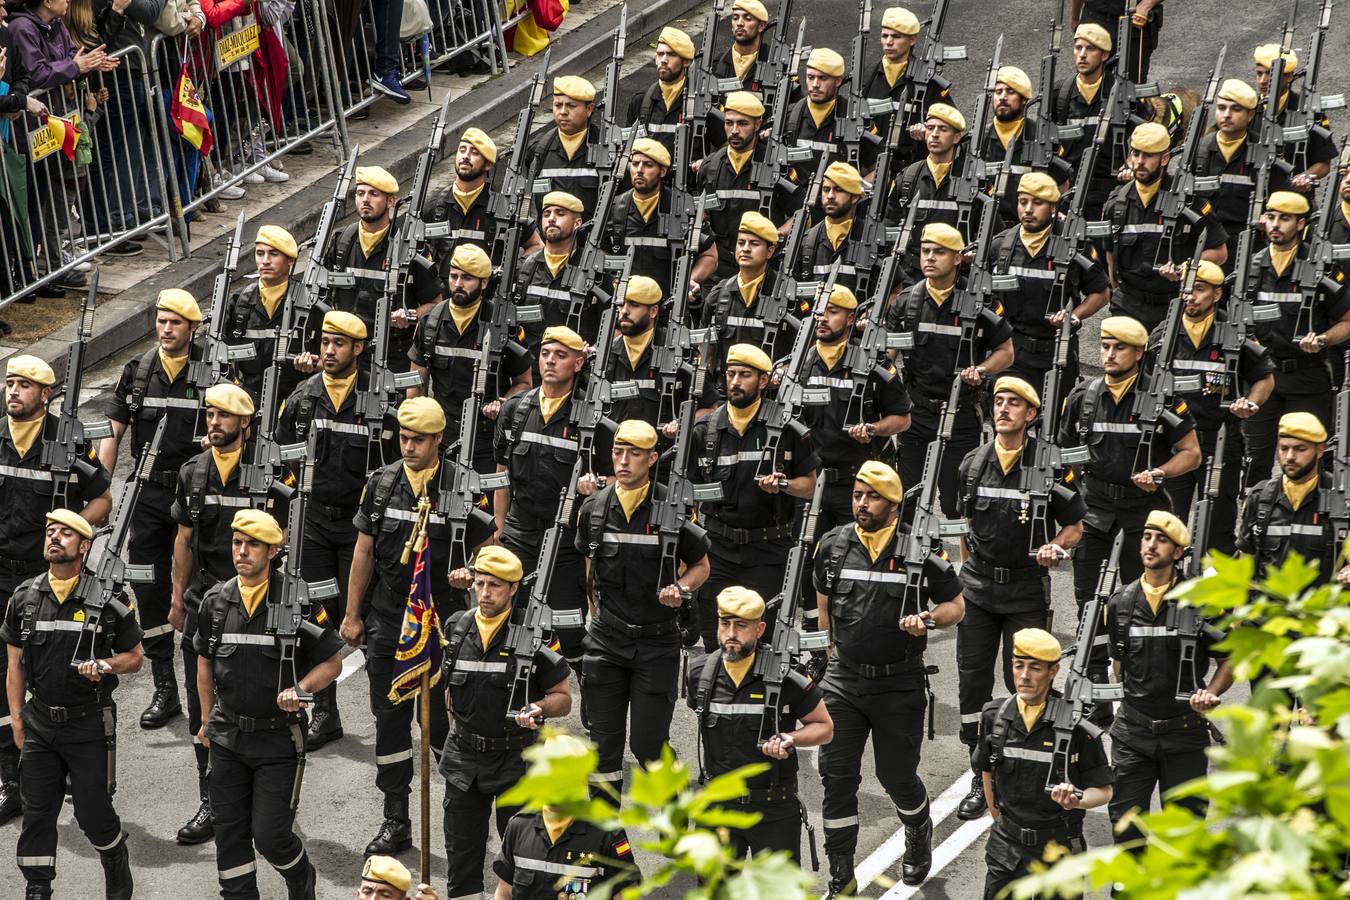 Los Reyes de España presidieron en Logroño el Desfile del Día de las Fuezas Armadas, que reunió a miles de asistentes.